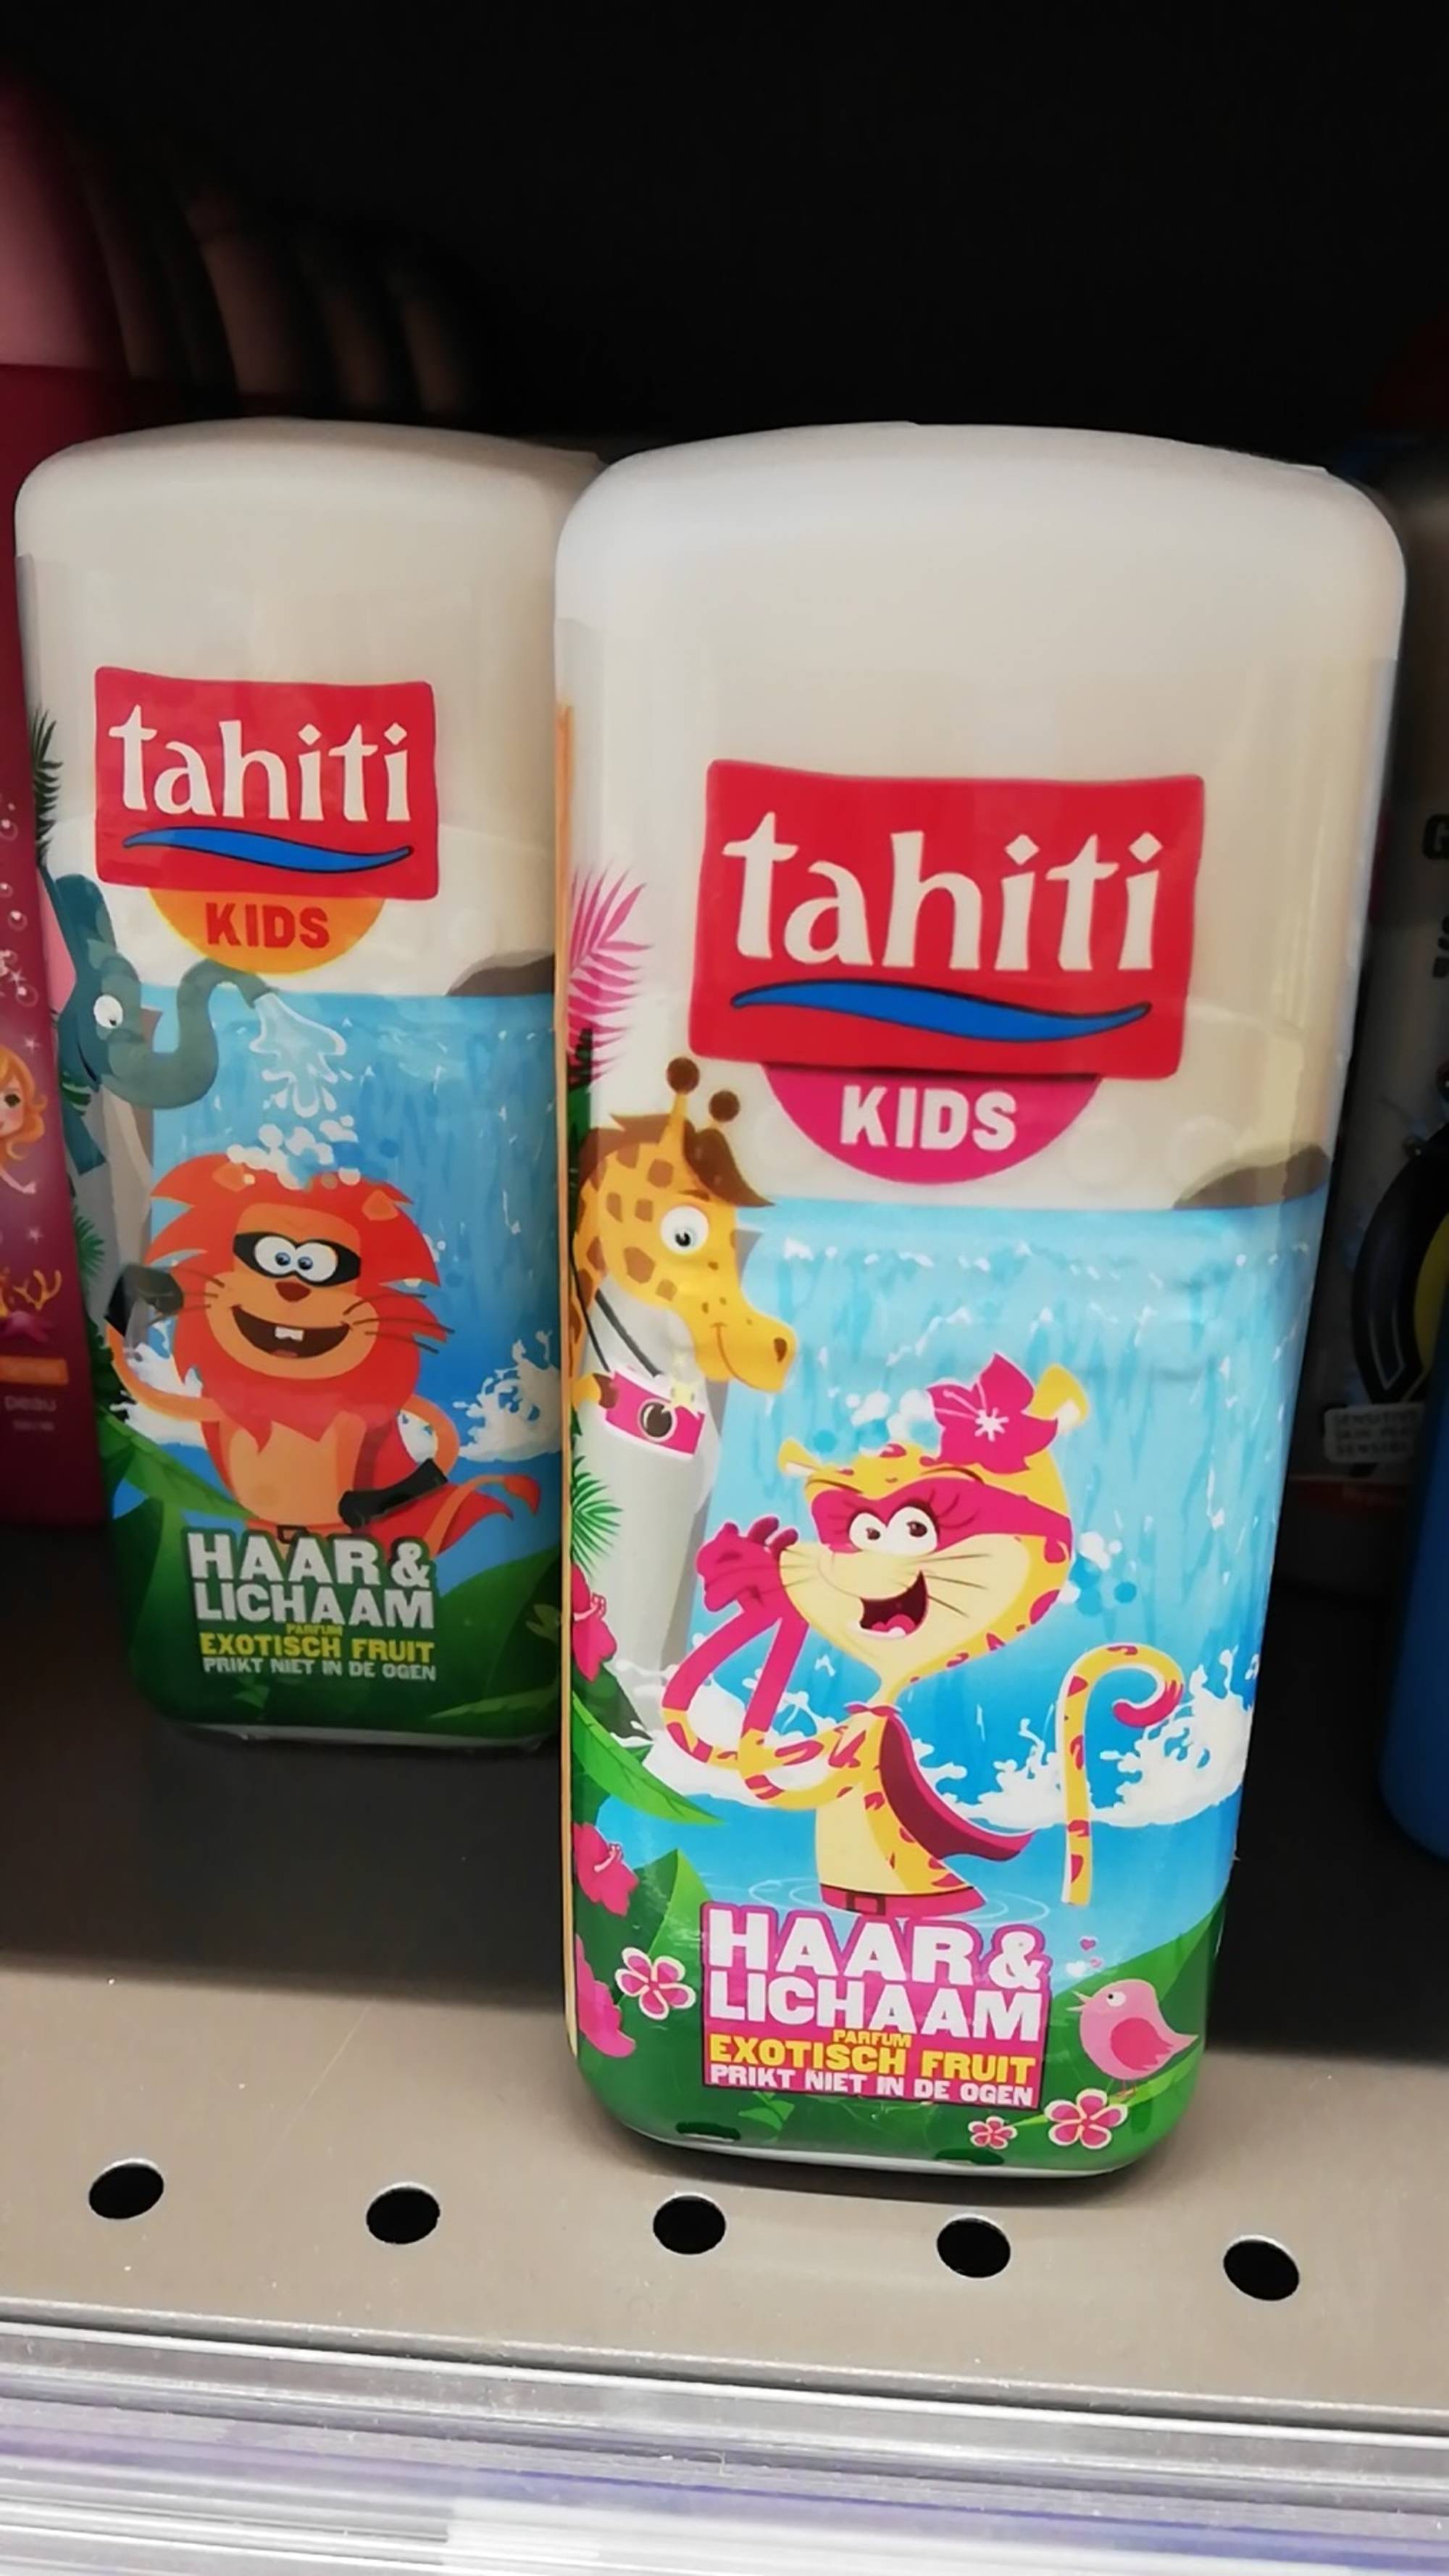 TAHITI - kids - Haar & lichaam parfum exotisch fruit